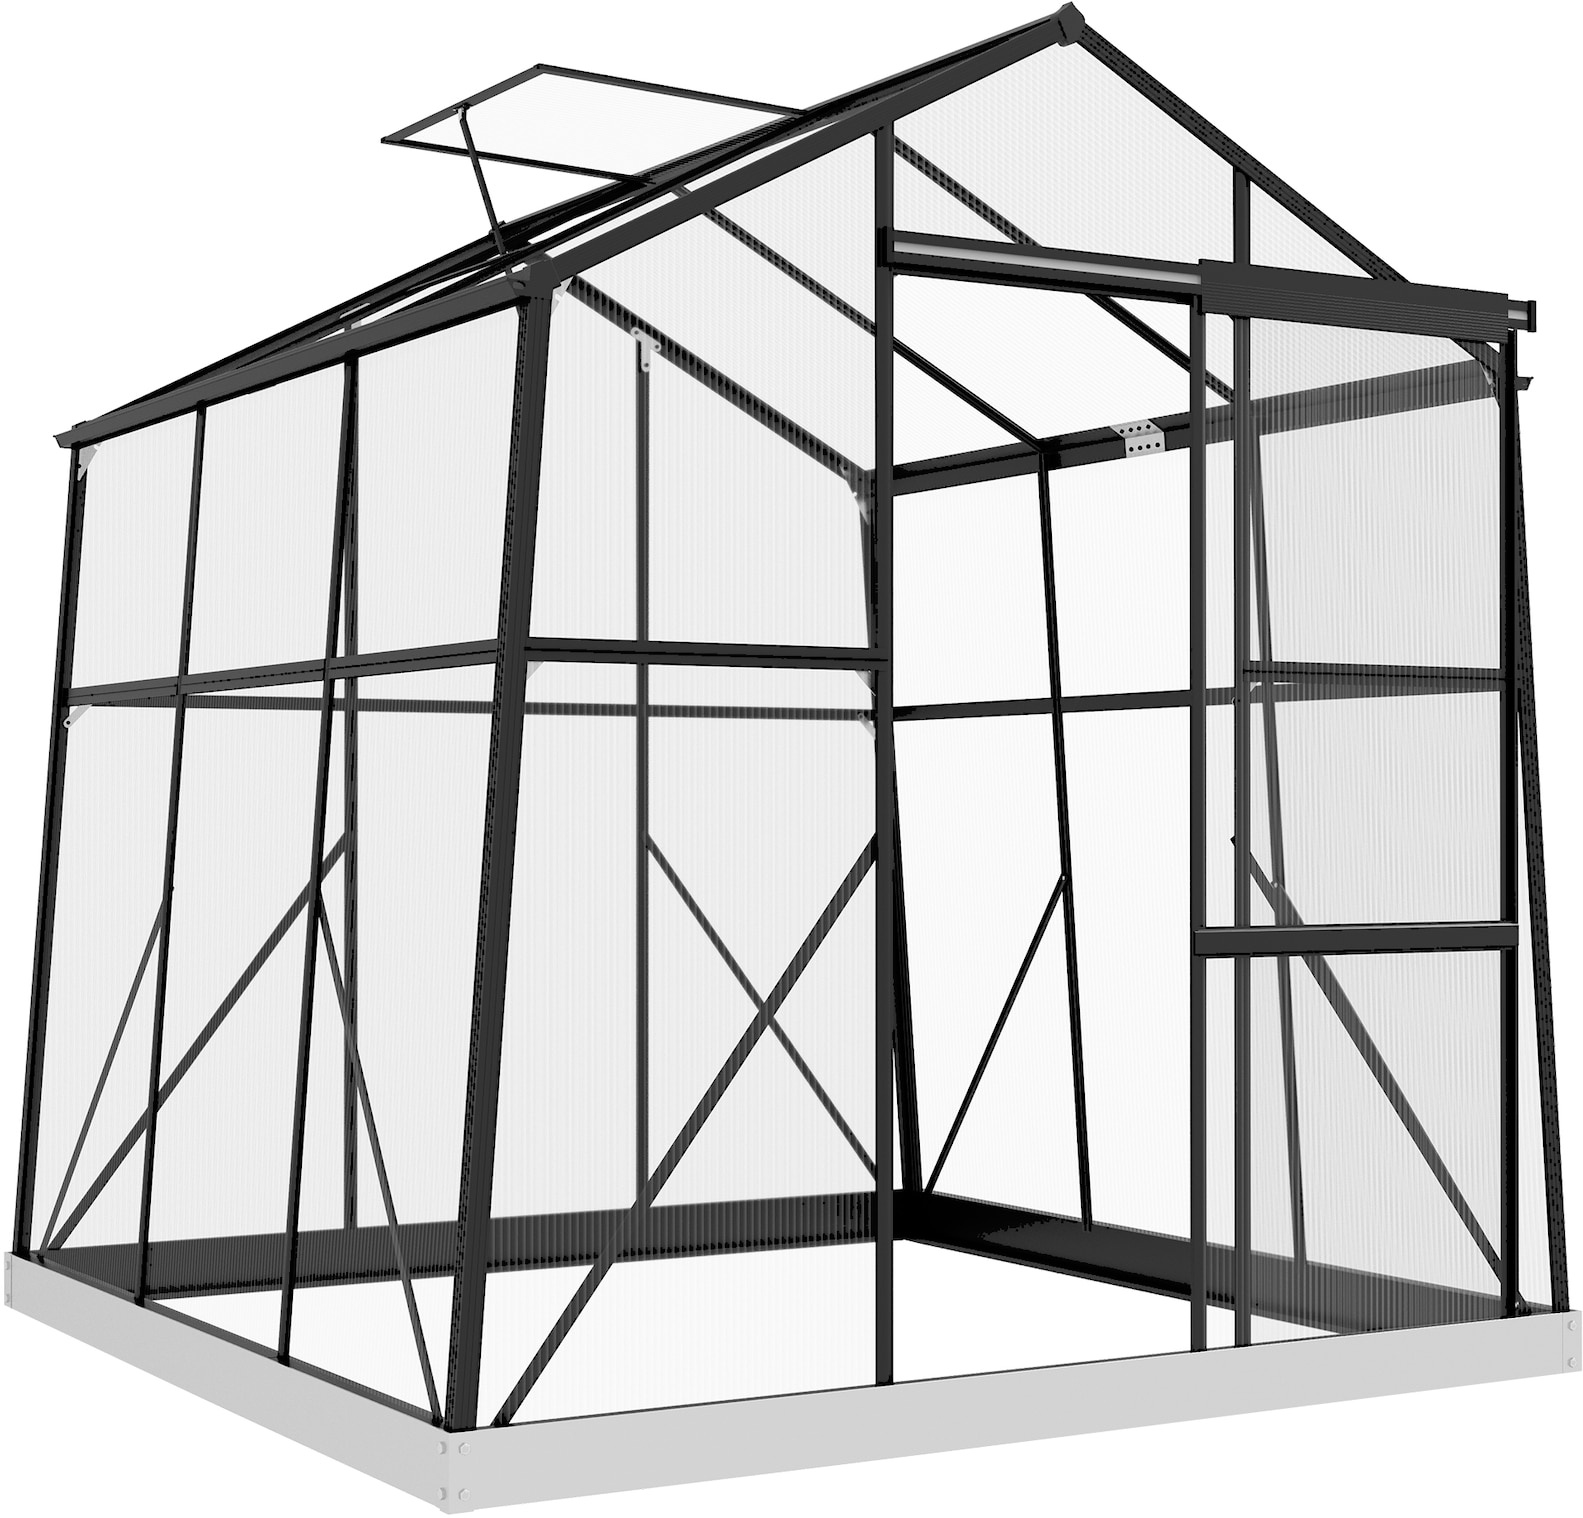 Outsunny Gewächshaus mit integriertem Rinnensystem, Bodenplatten und Schiebetür schwarz 192L x 192B x 204H cm